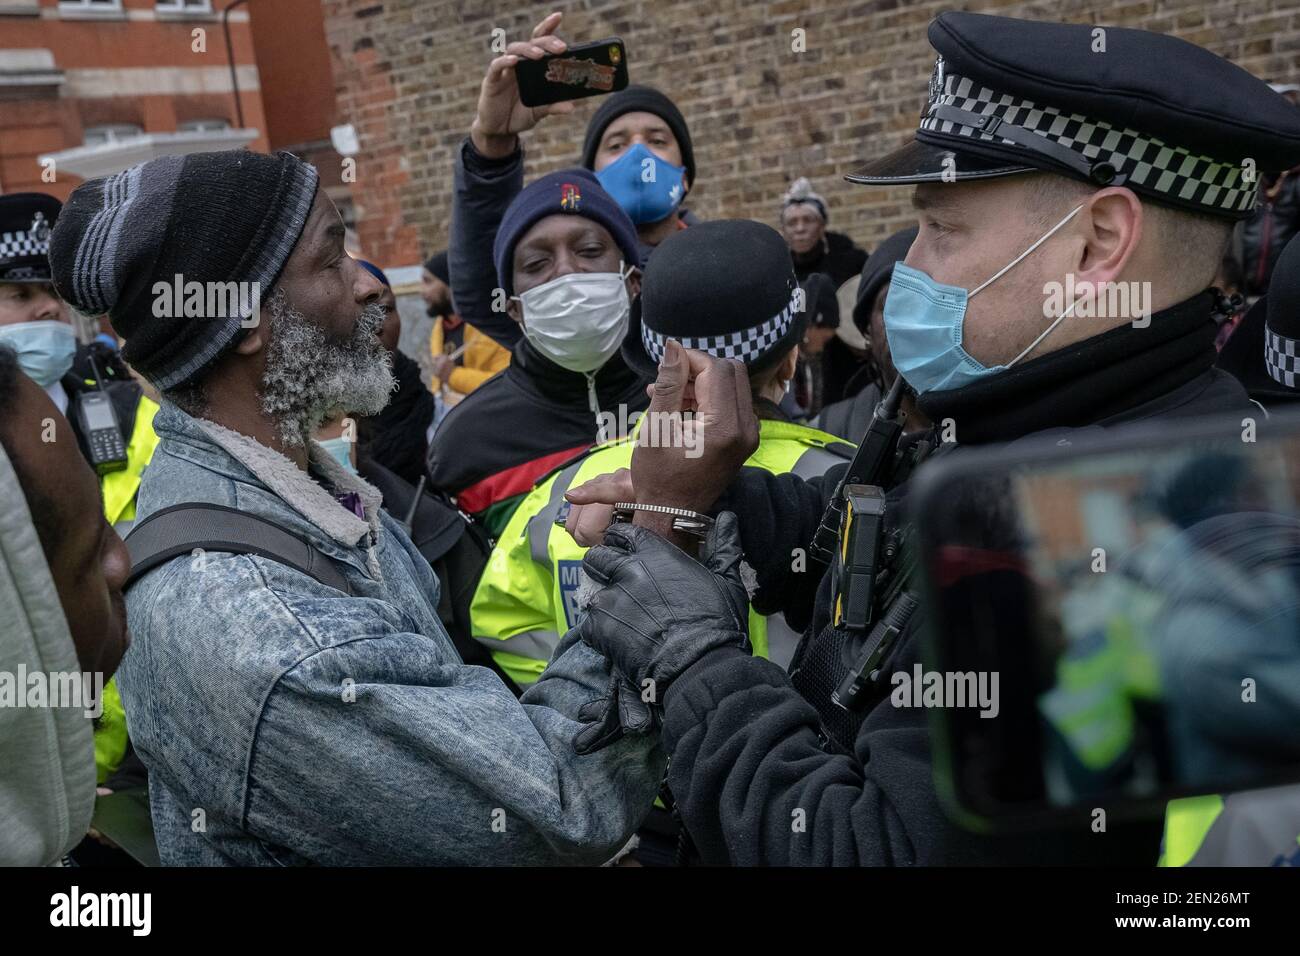 Coronavirus : la police se brise et procède à des arrestations au cours d'une tentative d'action musicale anti-verrouillage à Brixton Windrush Square, Londres, Royaume-Uni. Banque D'Images